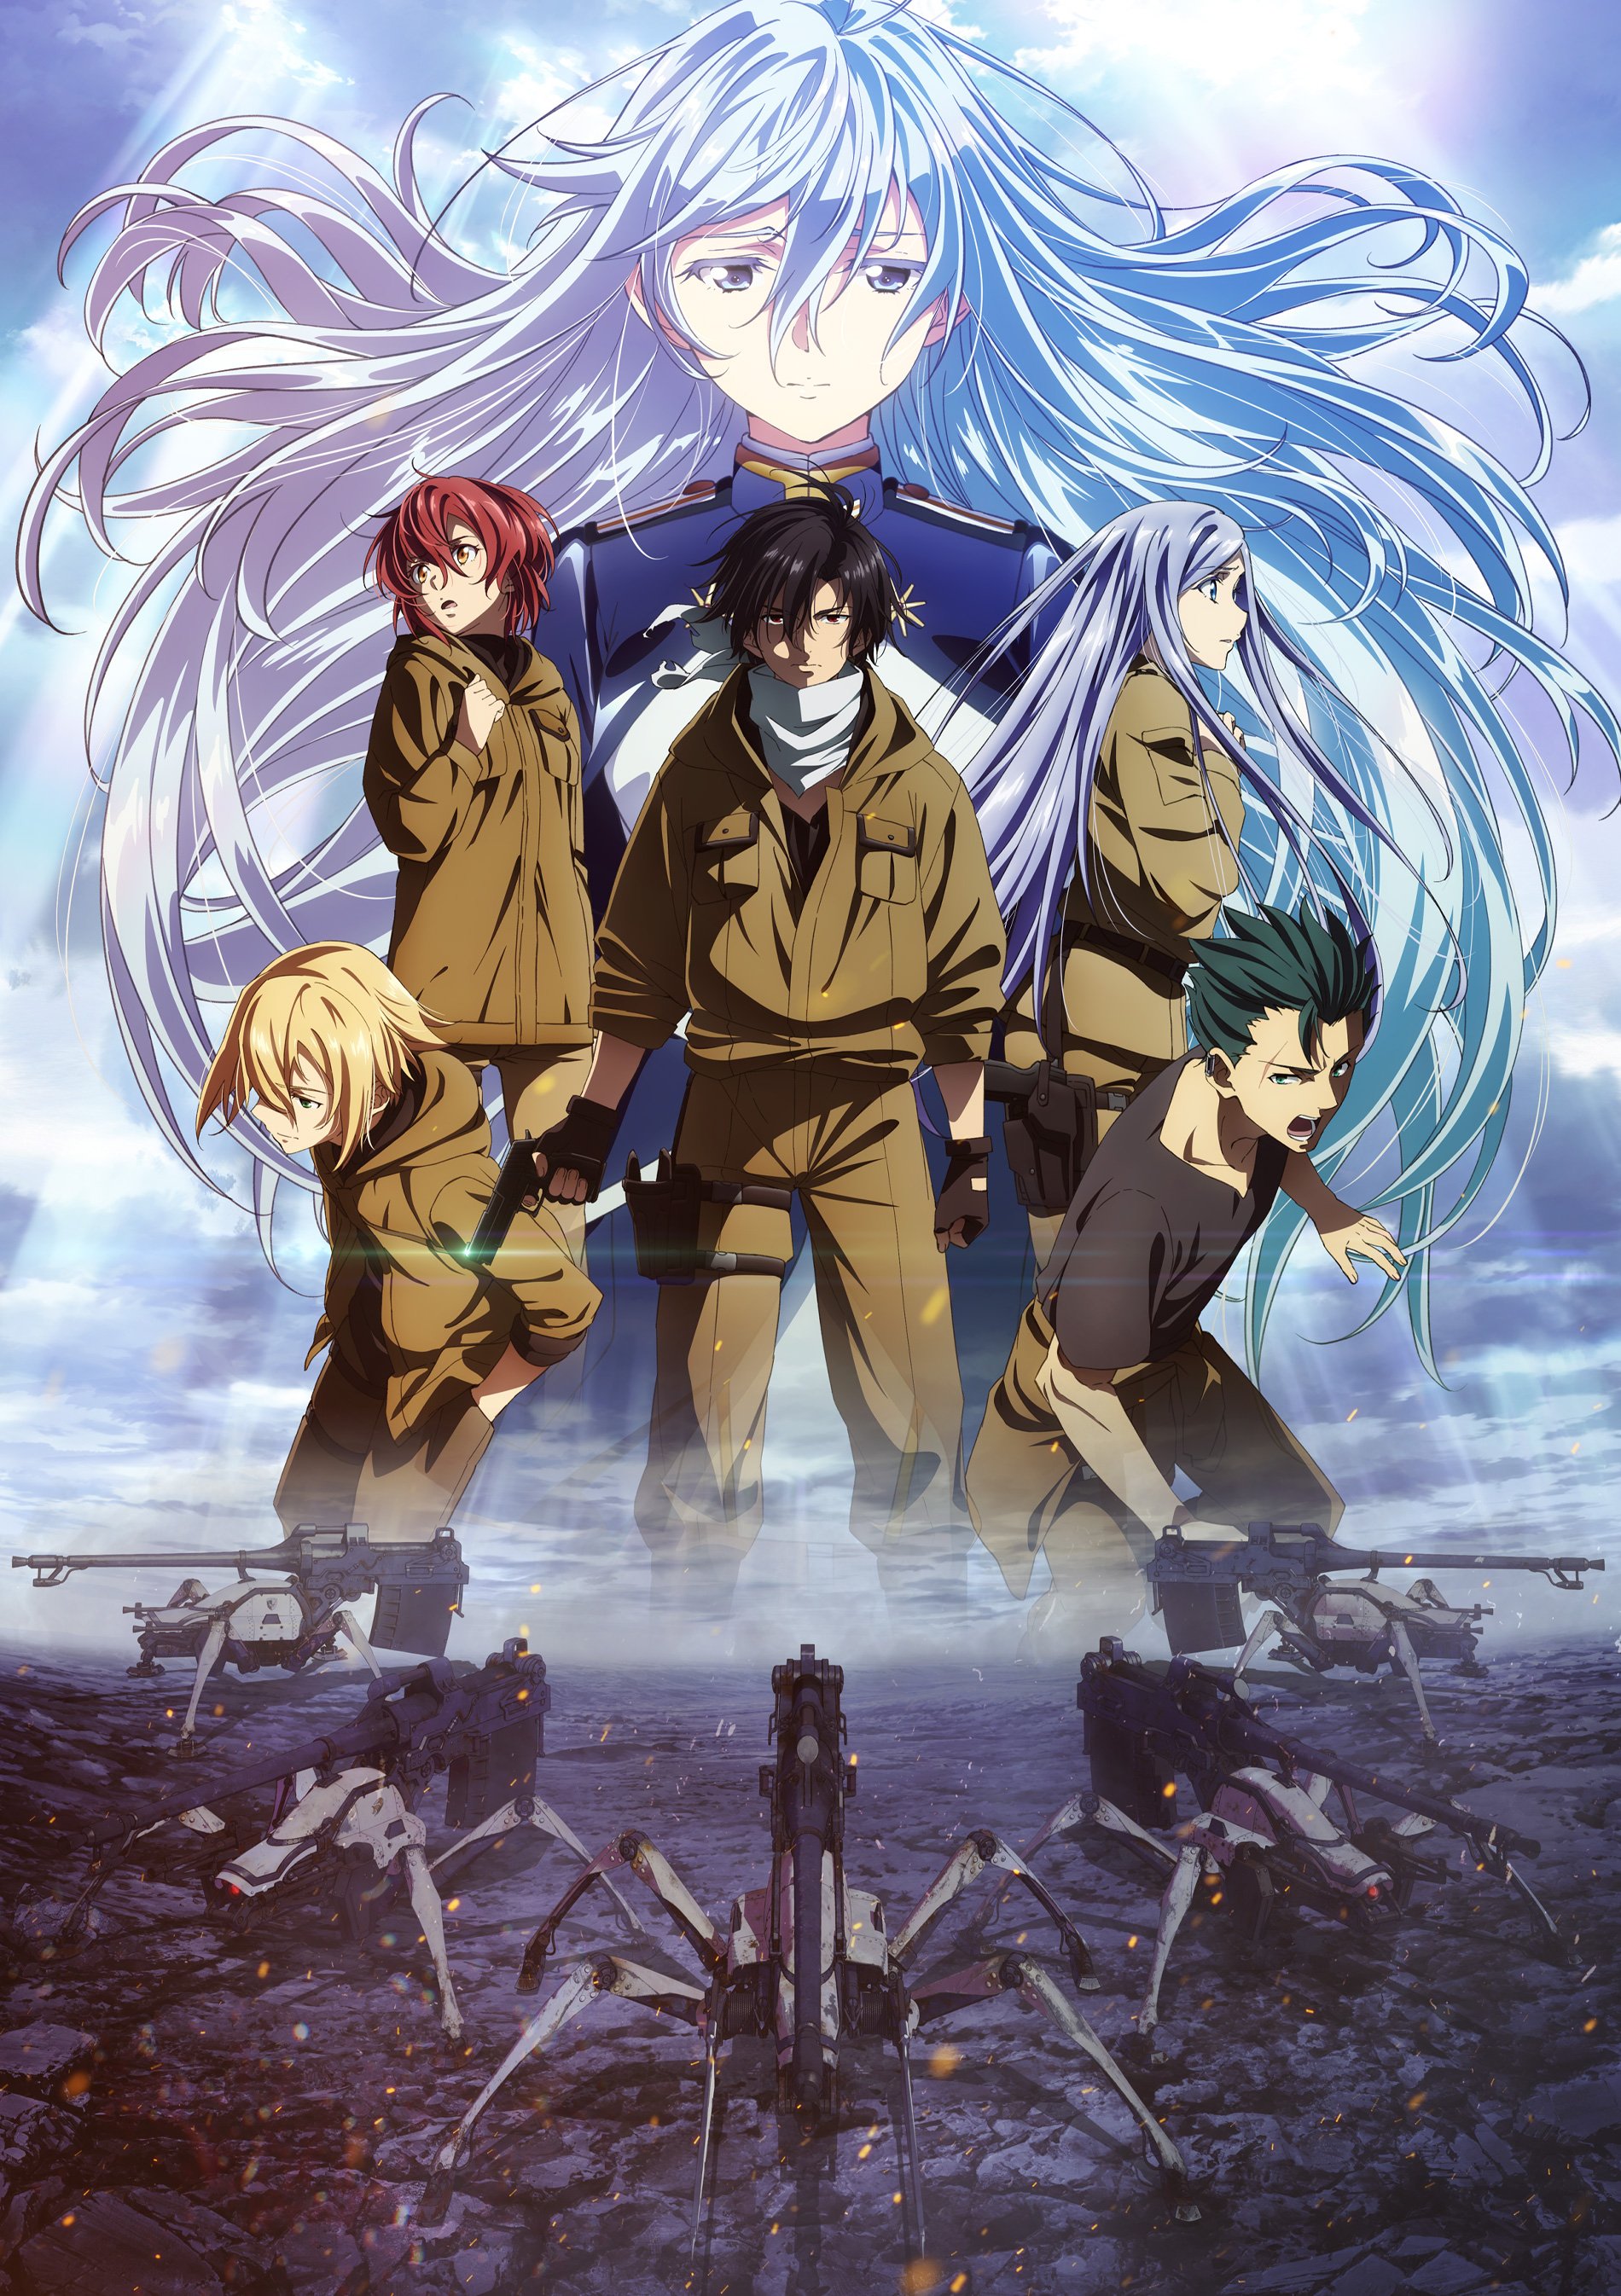 DEMON SLAYER EP 8 S2  By Les épisodes de mangas-anime VF/Vostfr